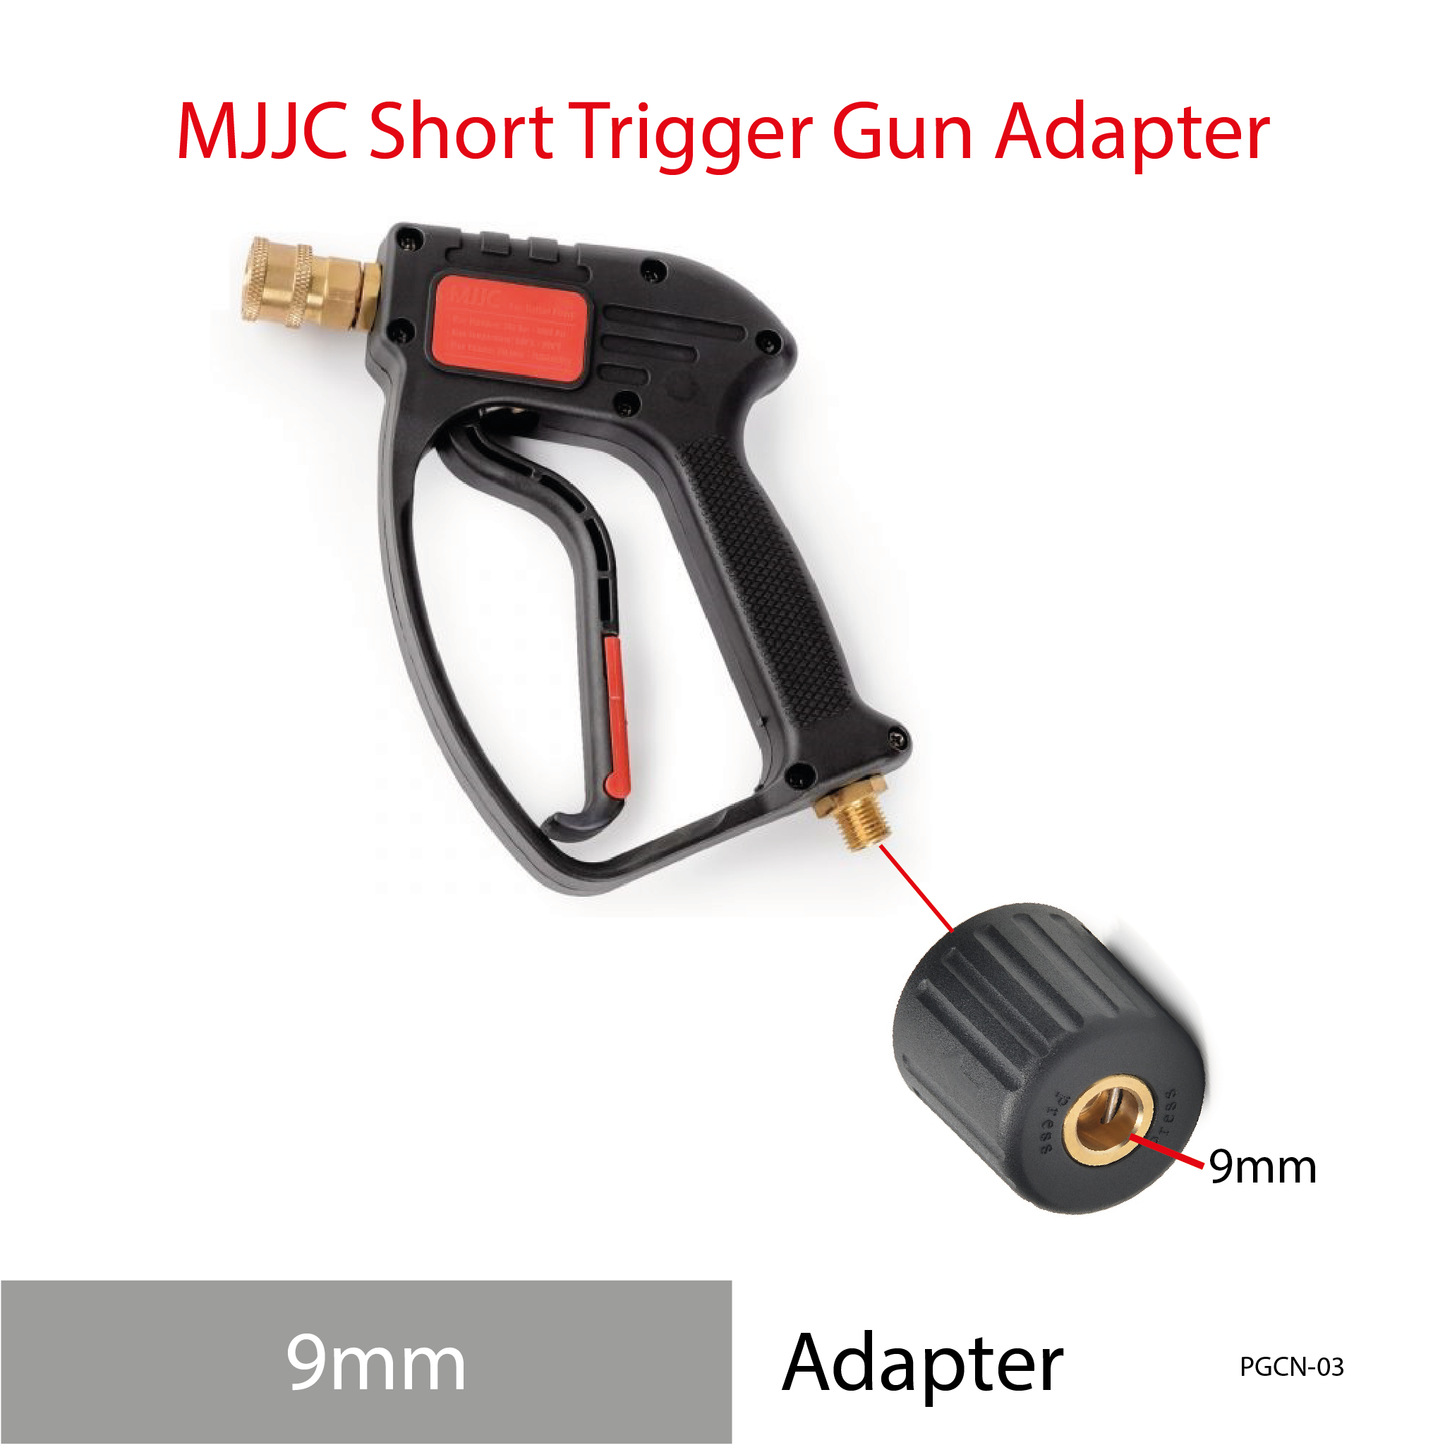 MJJC Short Trigger Gun Adapter 9mm hose tips